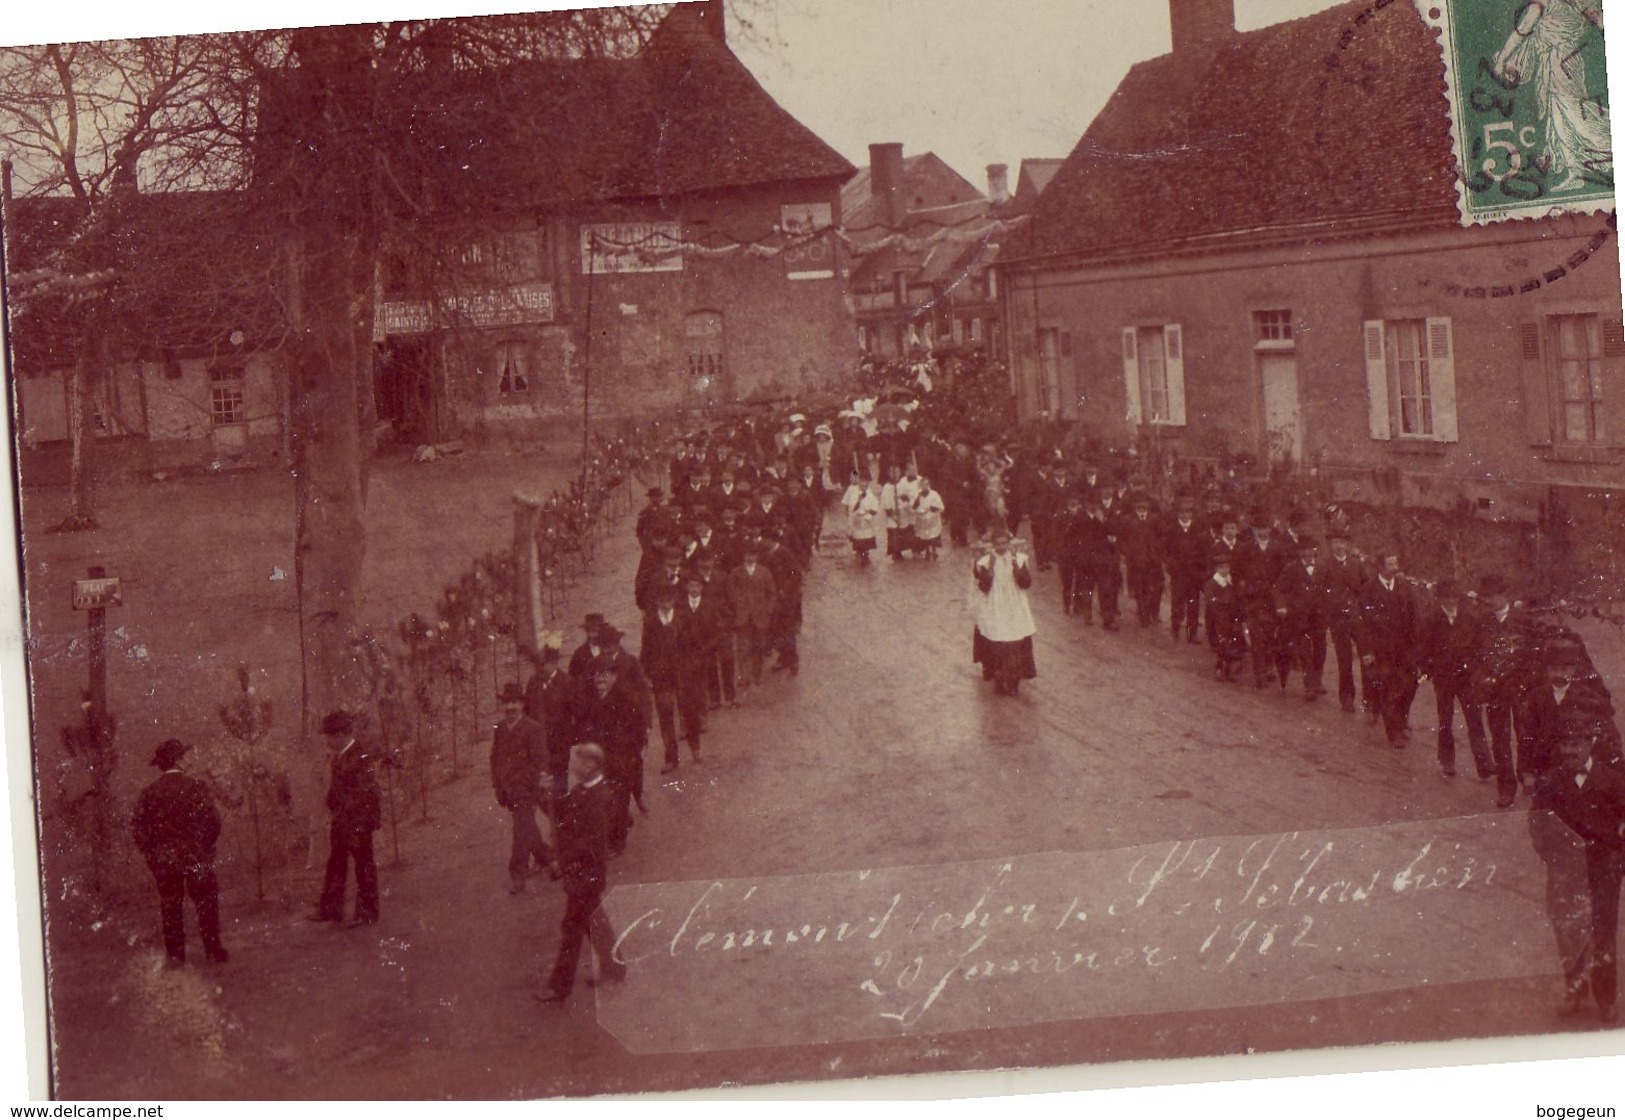 18 CLEMONT SUR CHER St Sébastien 20 Janvier 1912 - Clémont